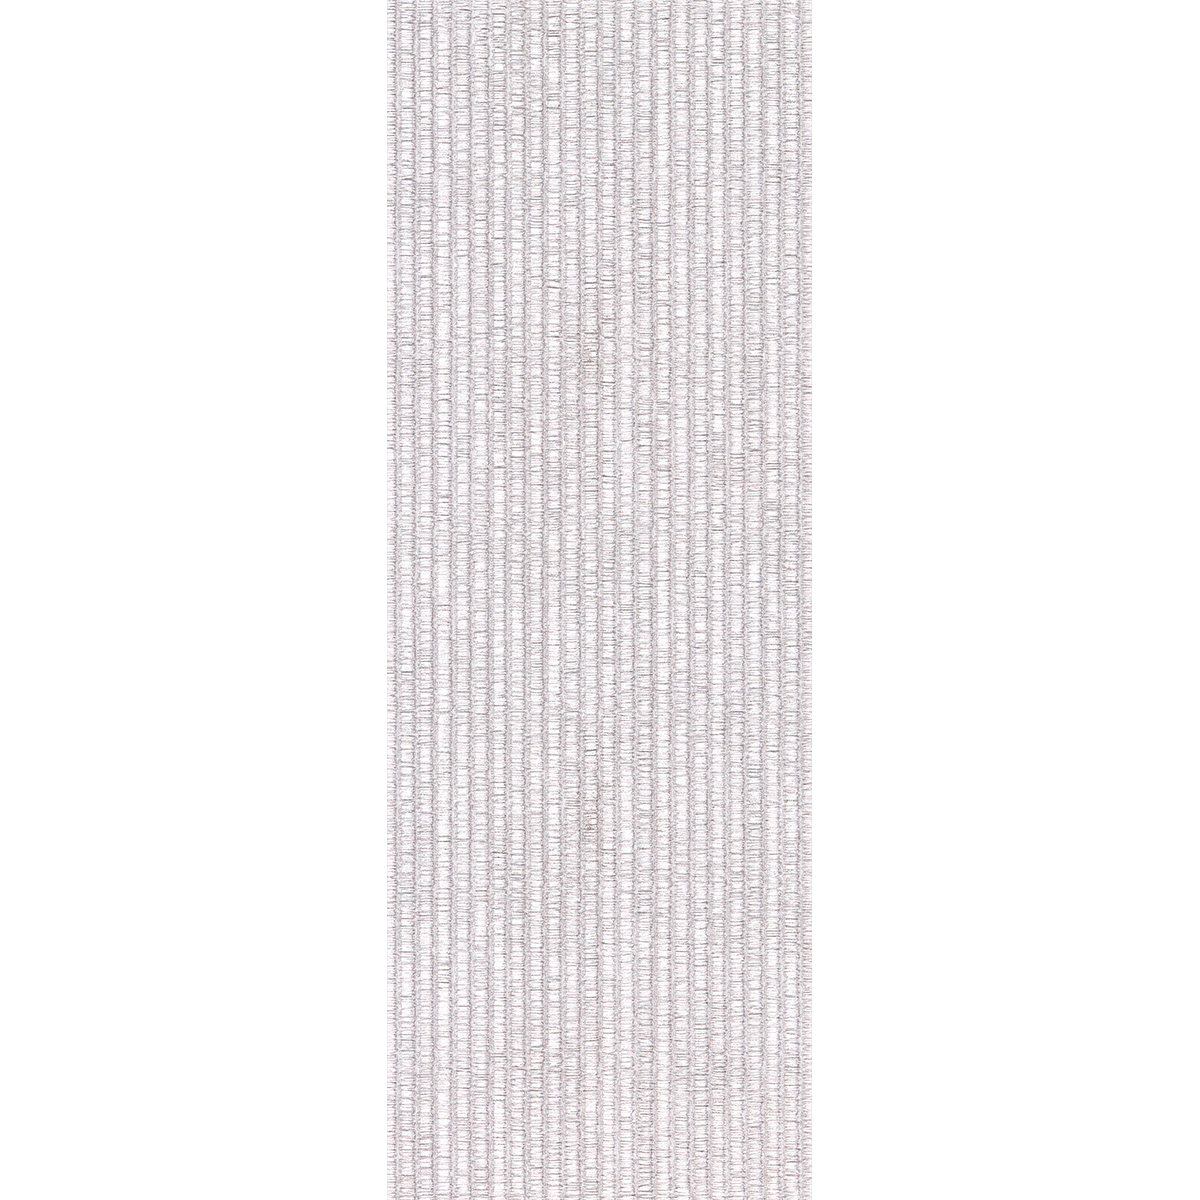 Декор Kerlife Alba Bianco 25,1х70,9 декор керлайф strato gala blanco 25 1х70 9 см